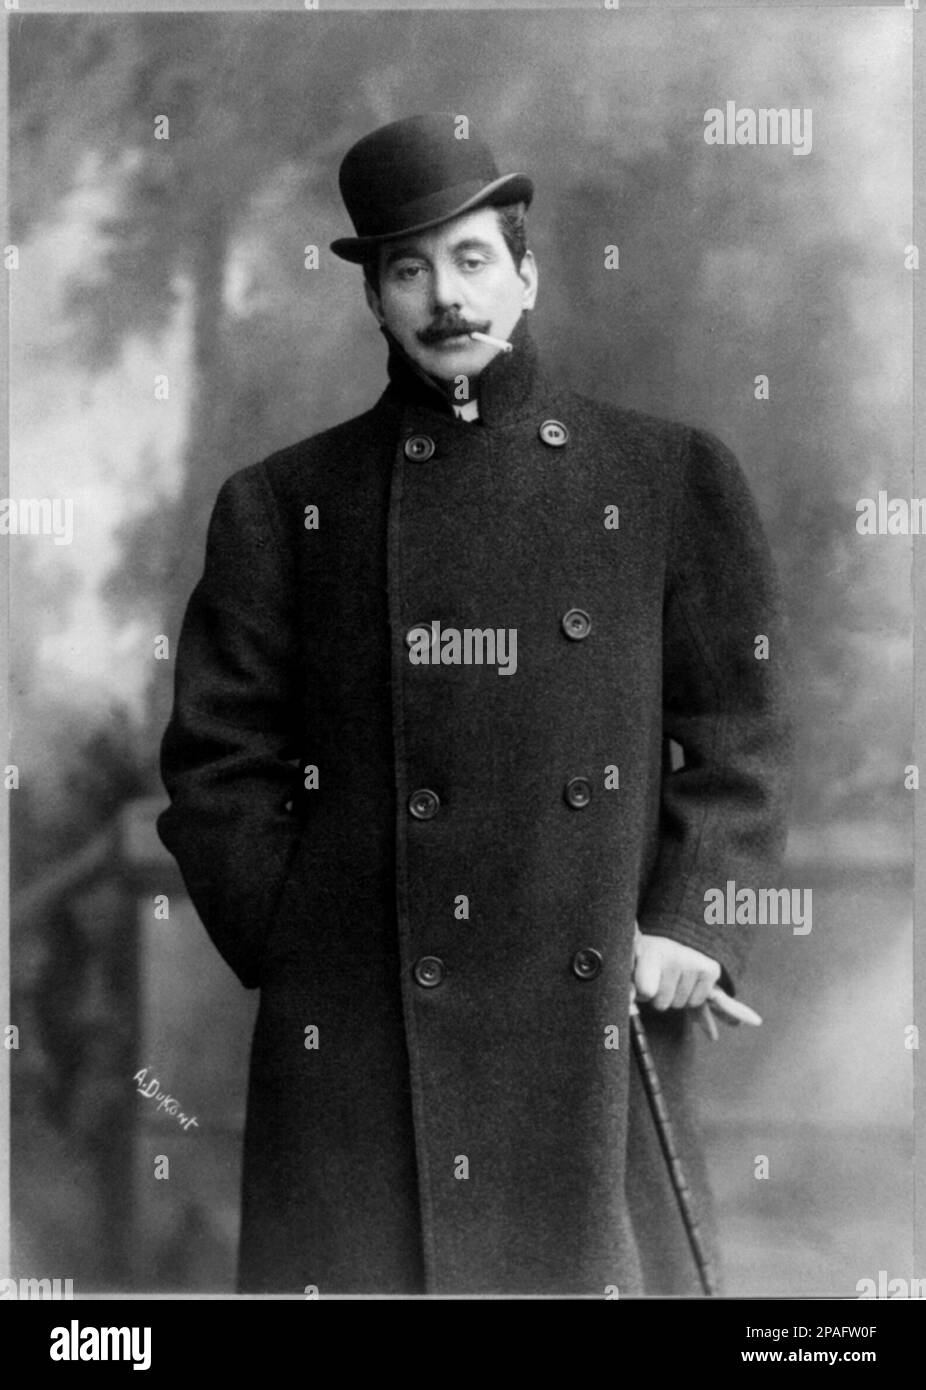 1906 , New York , USA : der gefeierte italienische Komponist GIACOMO PUCCINI 1858 - 1924 ) . Foto: Dupont , New York - OPERA LIRICA - COMPOSITORE - MUSICA - Portrait - ritratto - Baffi - Schnurrbart - CLASSICA - KLASSISCH - COMPOSITORE LIRICO - Portrait - ritratto - Hut - cappello - Cappotto - Mantel - MUSICISTA - MUSICA - Sigaretta - Zigarette - Passeggibastone - Handschuhe - Guanti - Fumo - Rauch - Fumatore - Raucher --- ARCHIVIO GBB Stockfoto